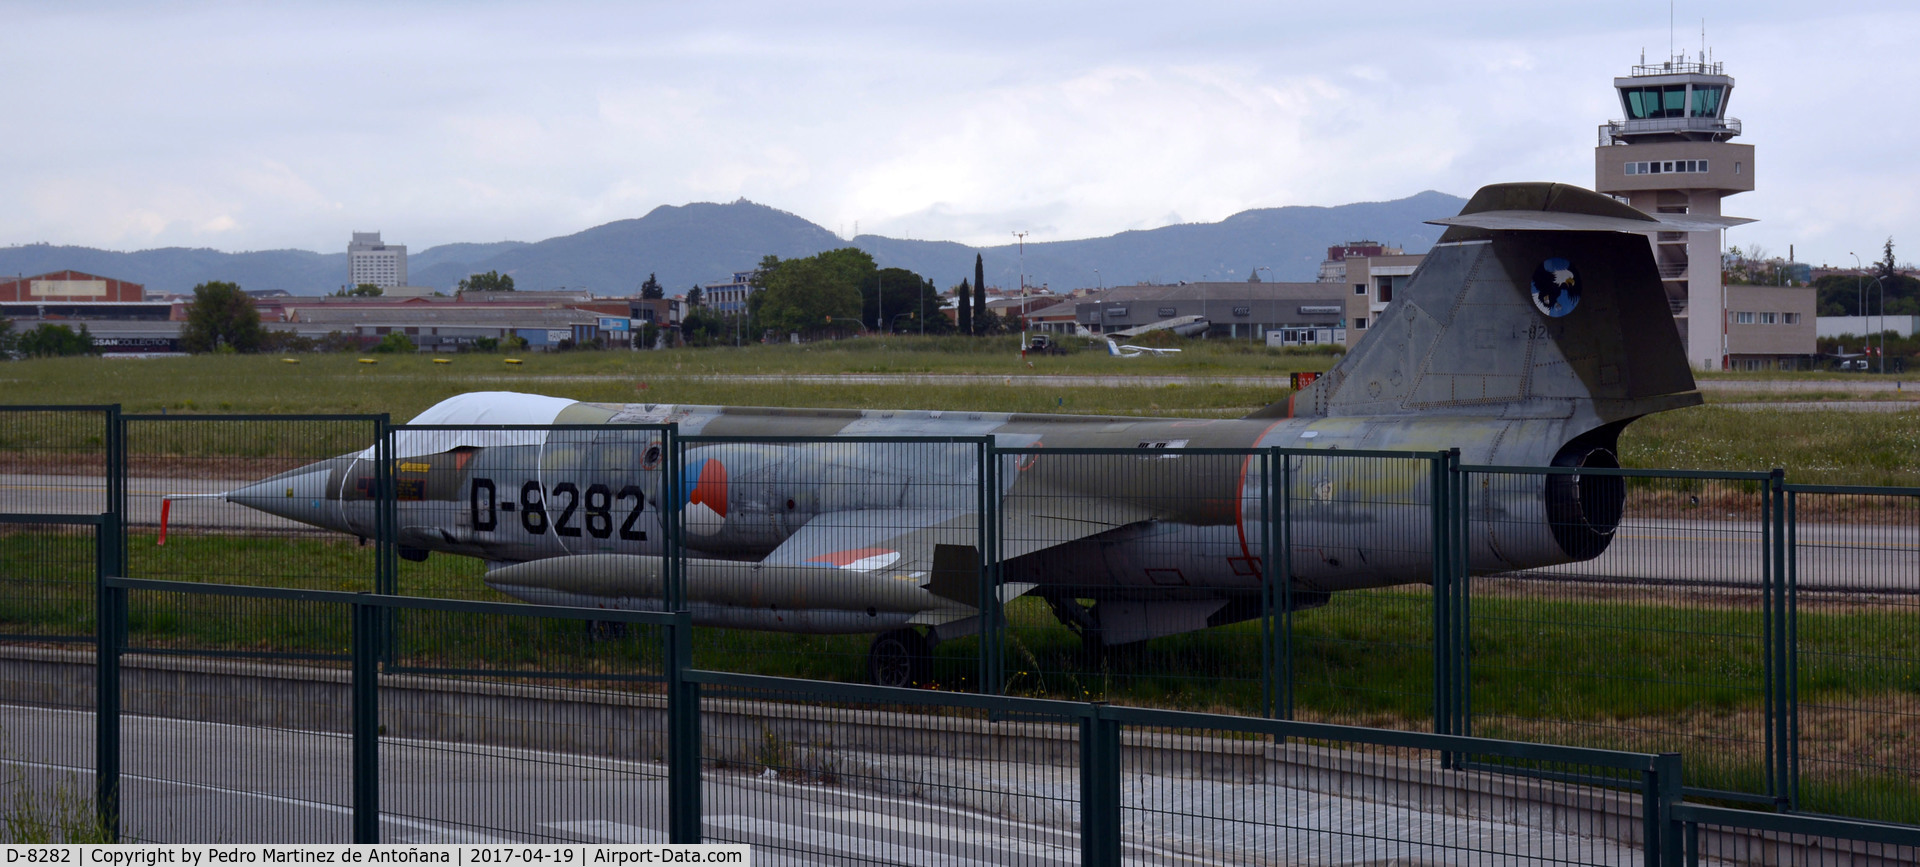 D-8282, Lockheed F-104G Starfighter C/N 693-8282, Aeropuerto Sabadell - España